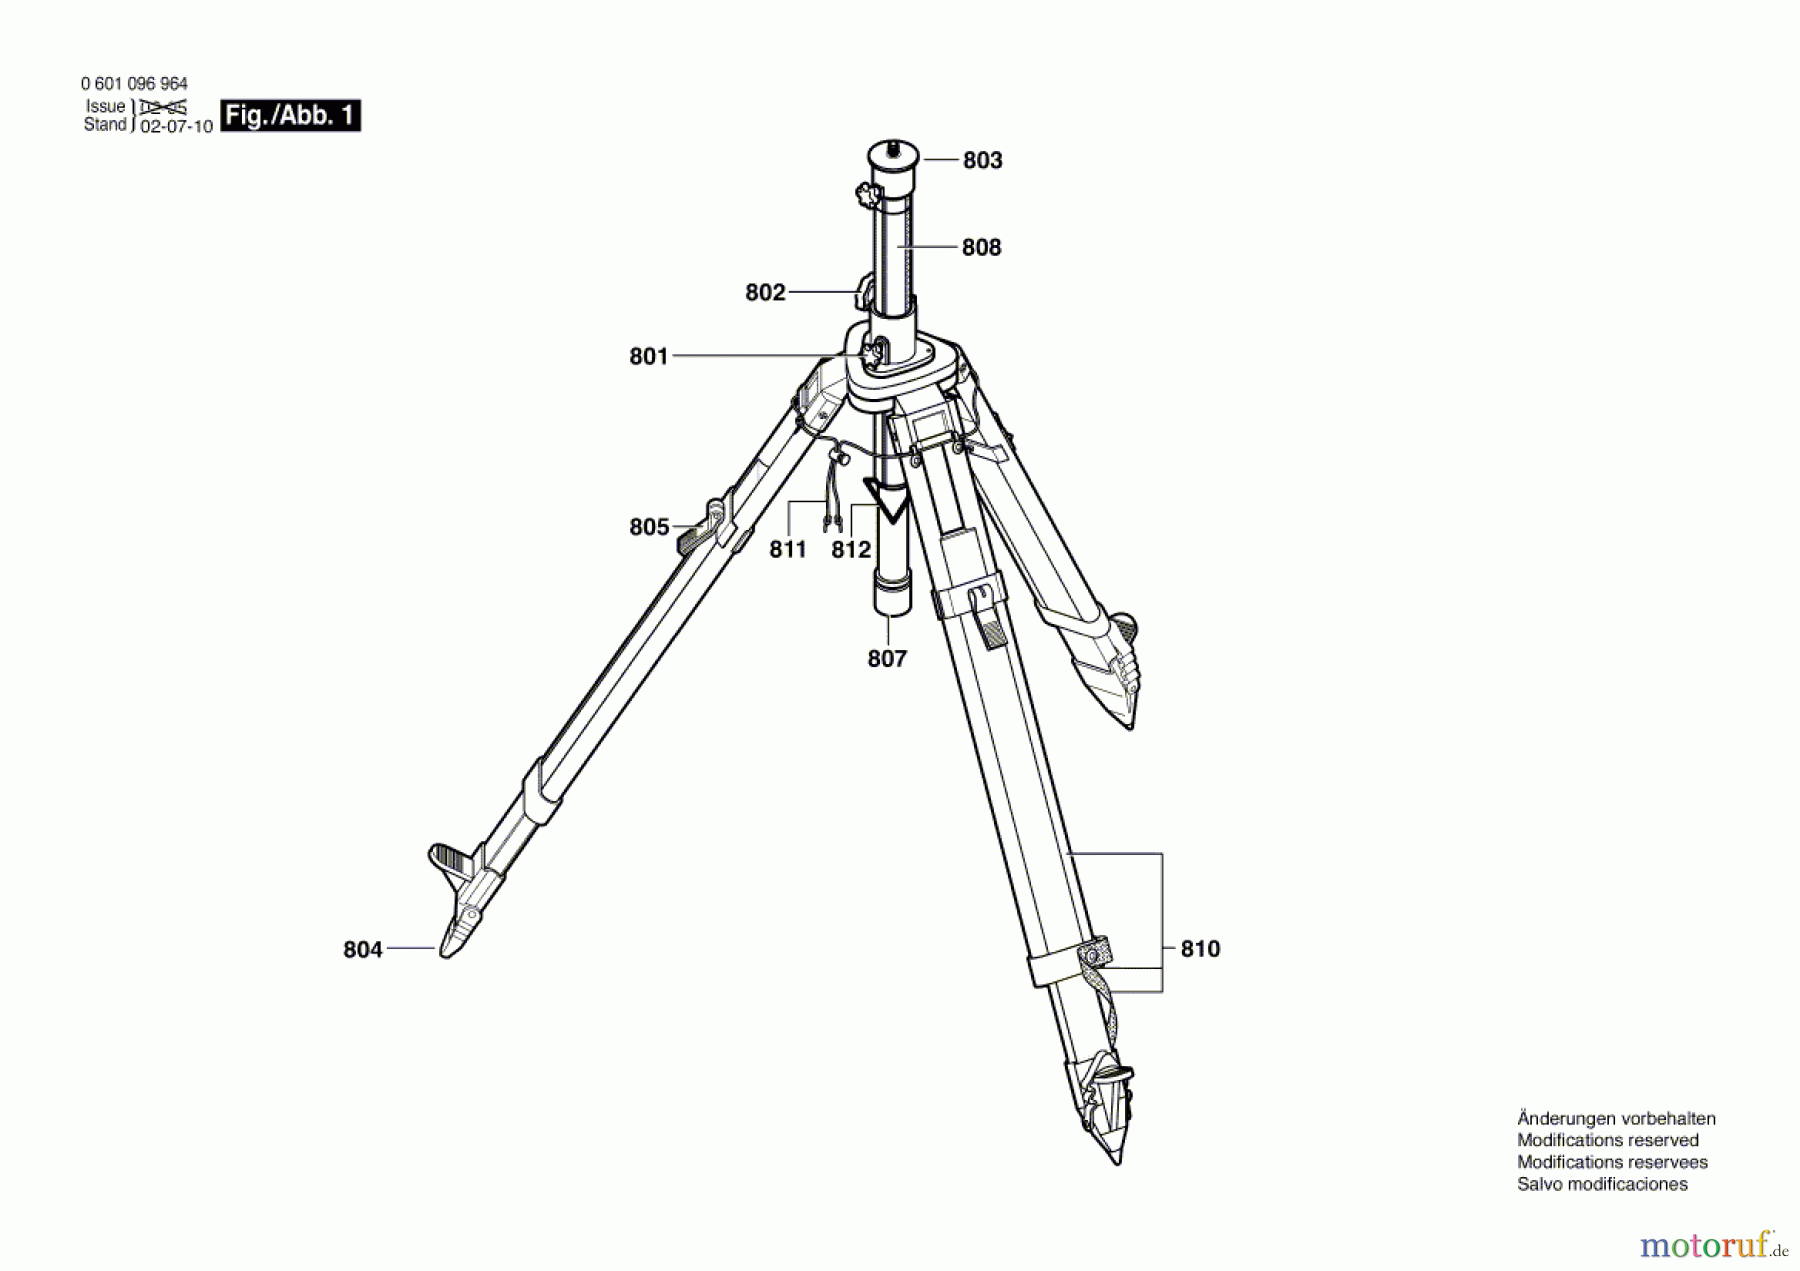  Bosch Werkzeug Stativ BS 280 Seite 1